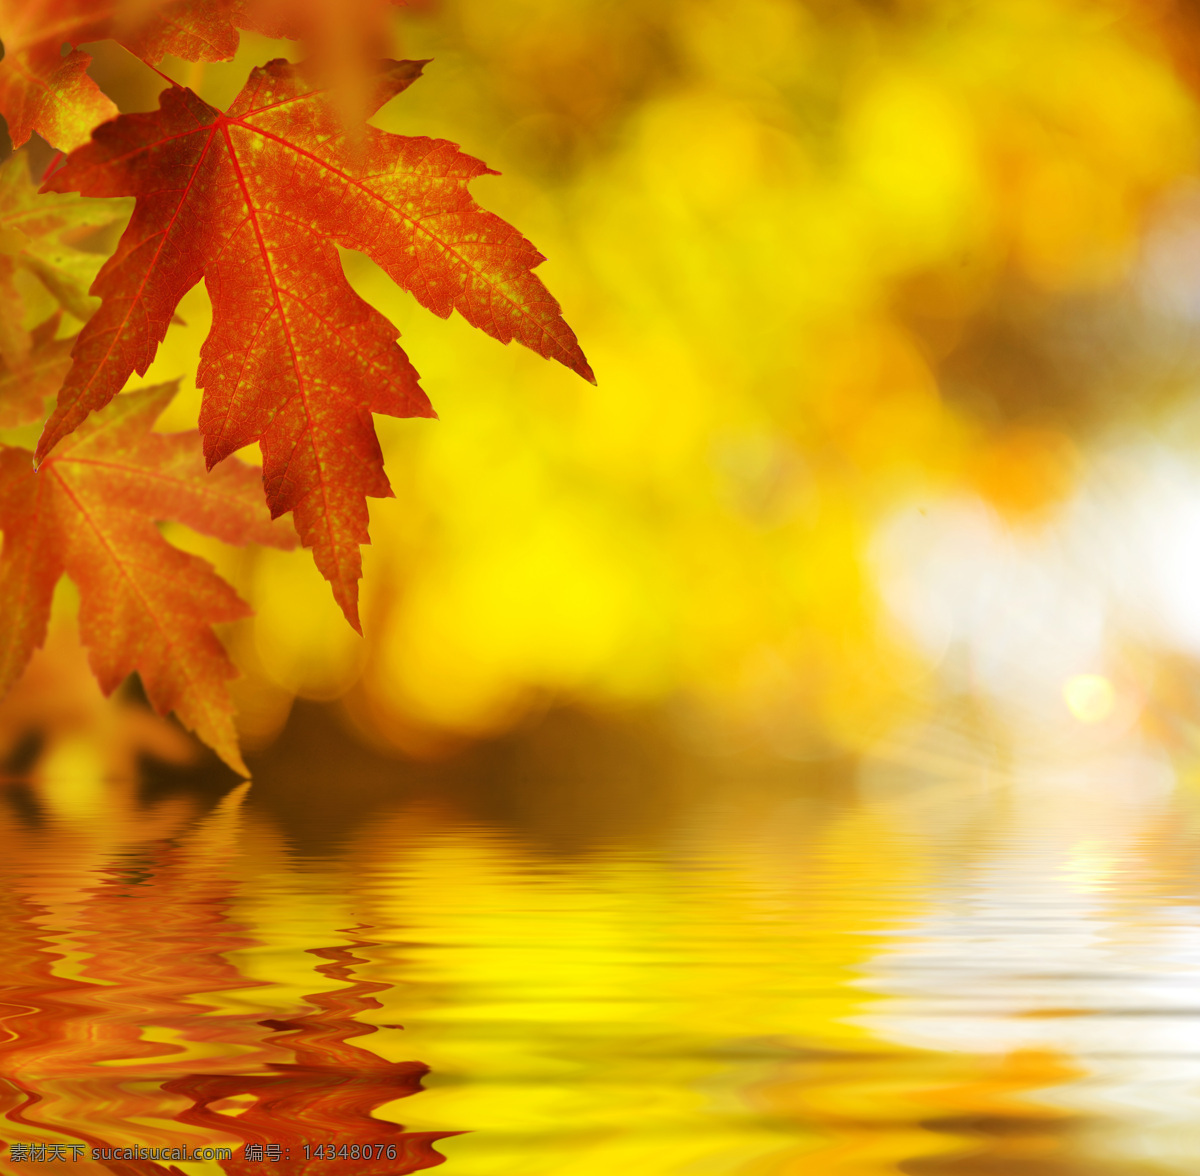 秋天 枫叶 水面 倒影 秋天枫叶 秋天树叶背景 叶子 黄叶 水面倒影 山水风景 风景图片